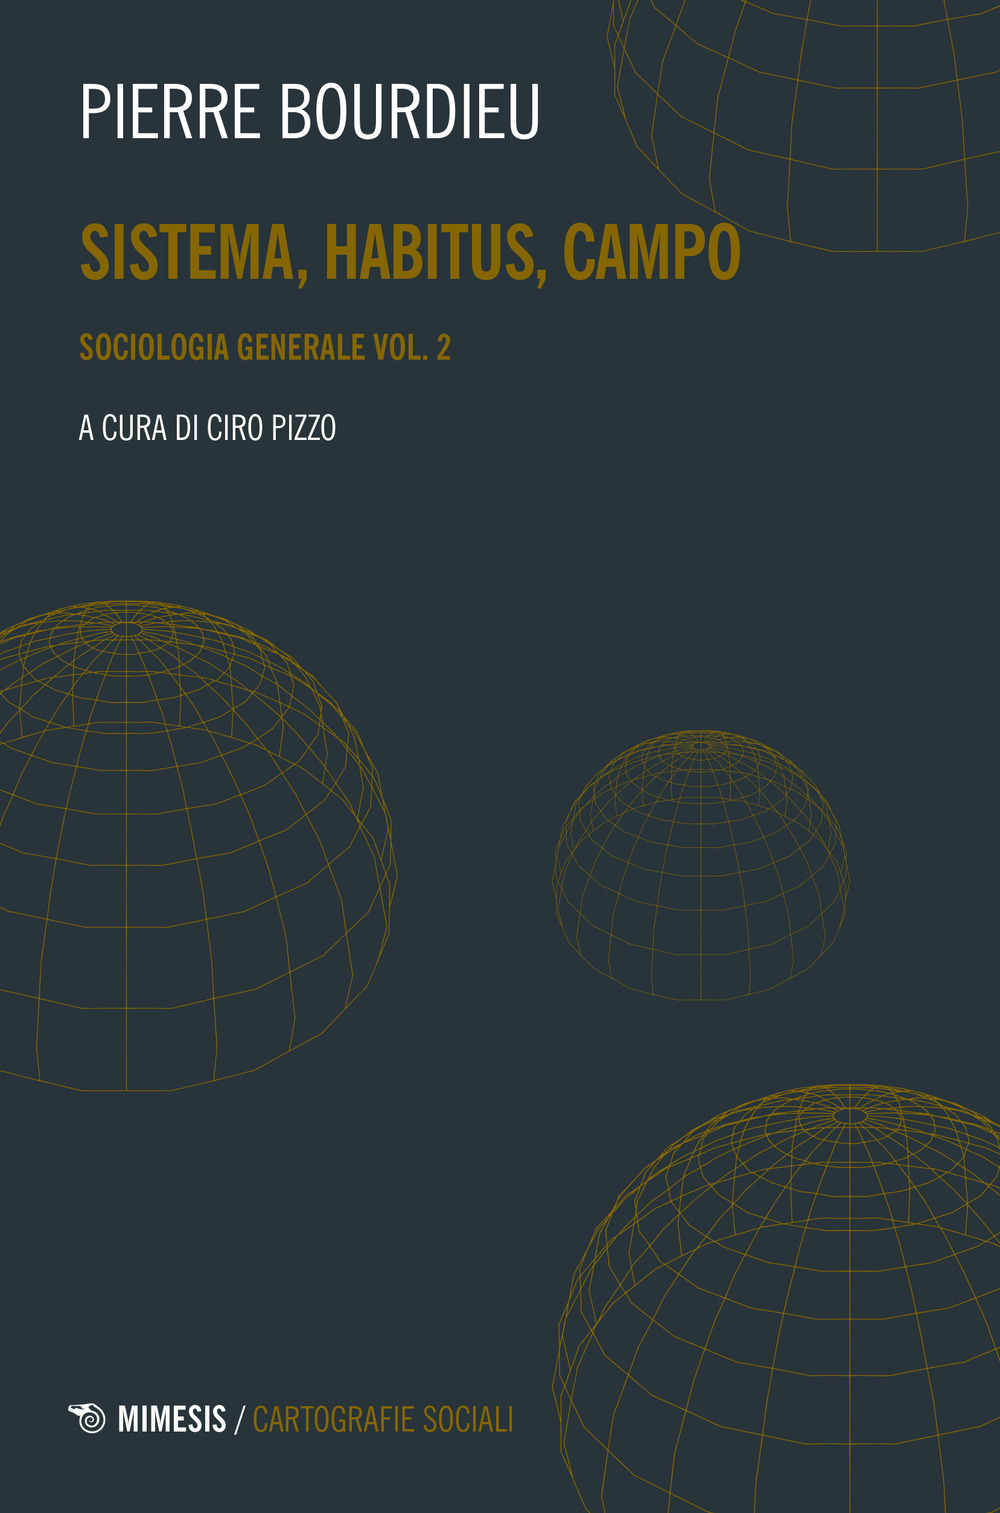 Sociologia generale. Vol. 2: Sistema, habitus, campo